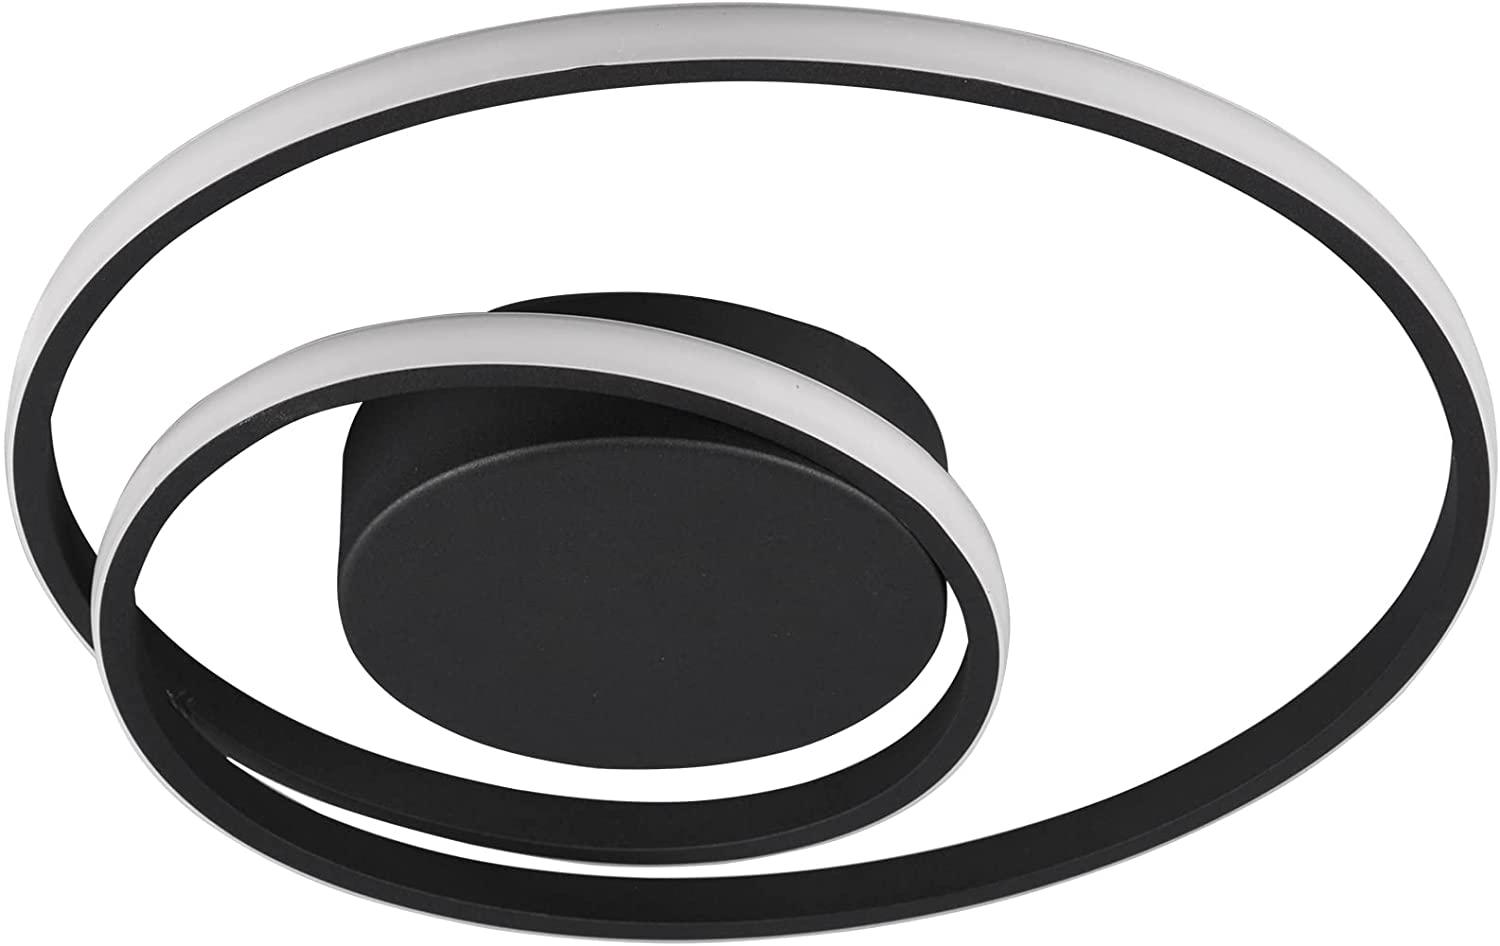 LED Deckenleuchte schwarz , RIng Design, dimmbar, 39 cm, ZIBAL Bild 1